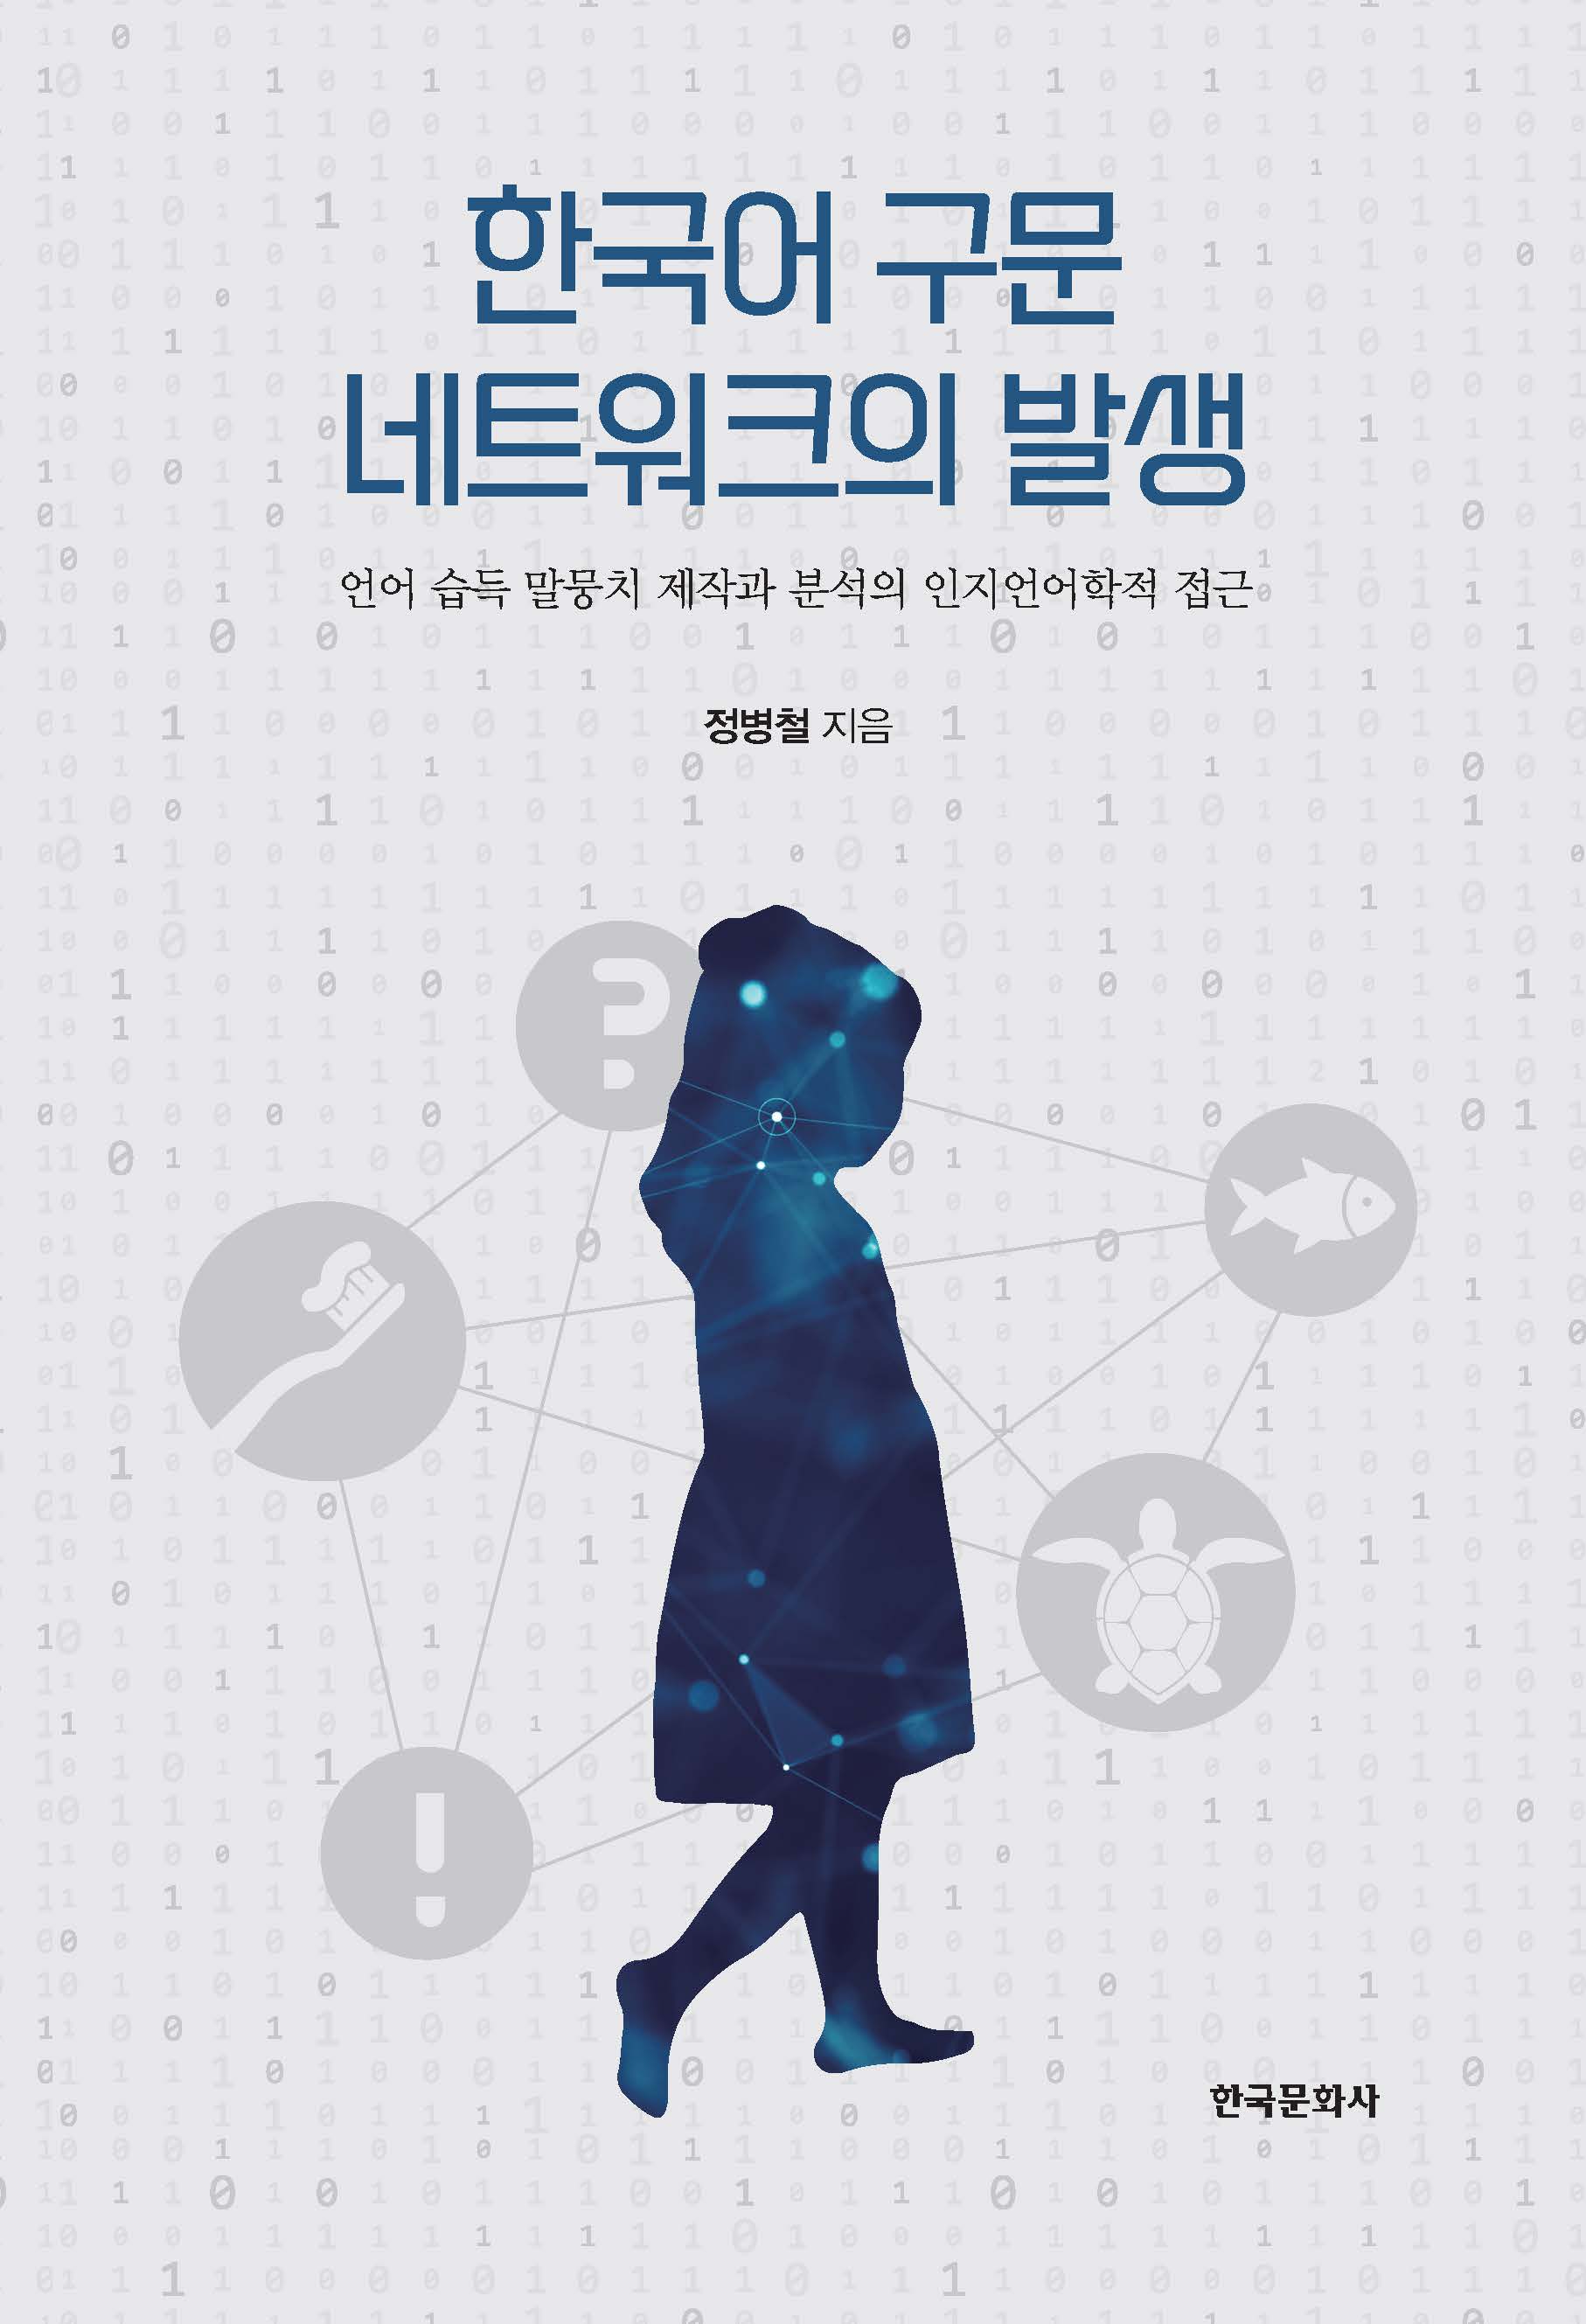 한국어 구문 네트워크의 발생 - 언어 습득 말뭉치 제작과 분석의 인지언어학적 접근